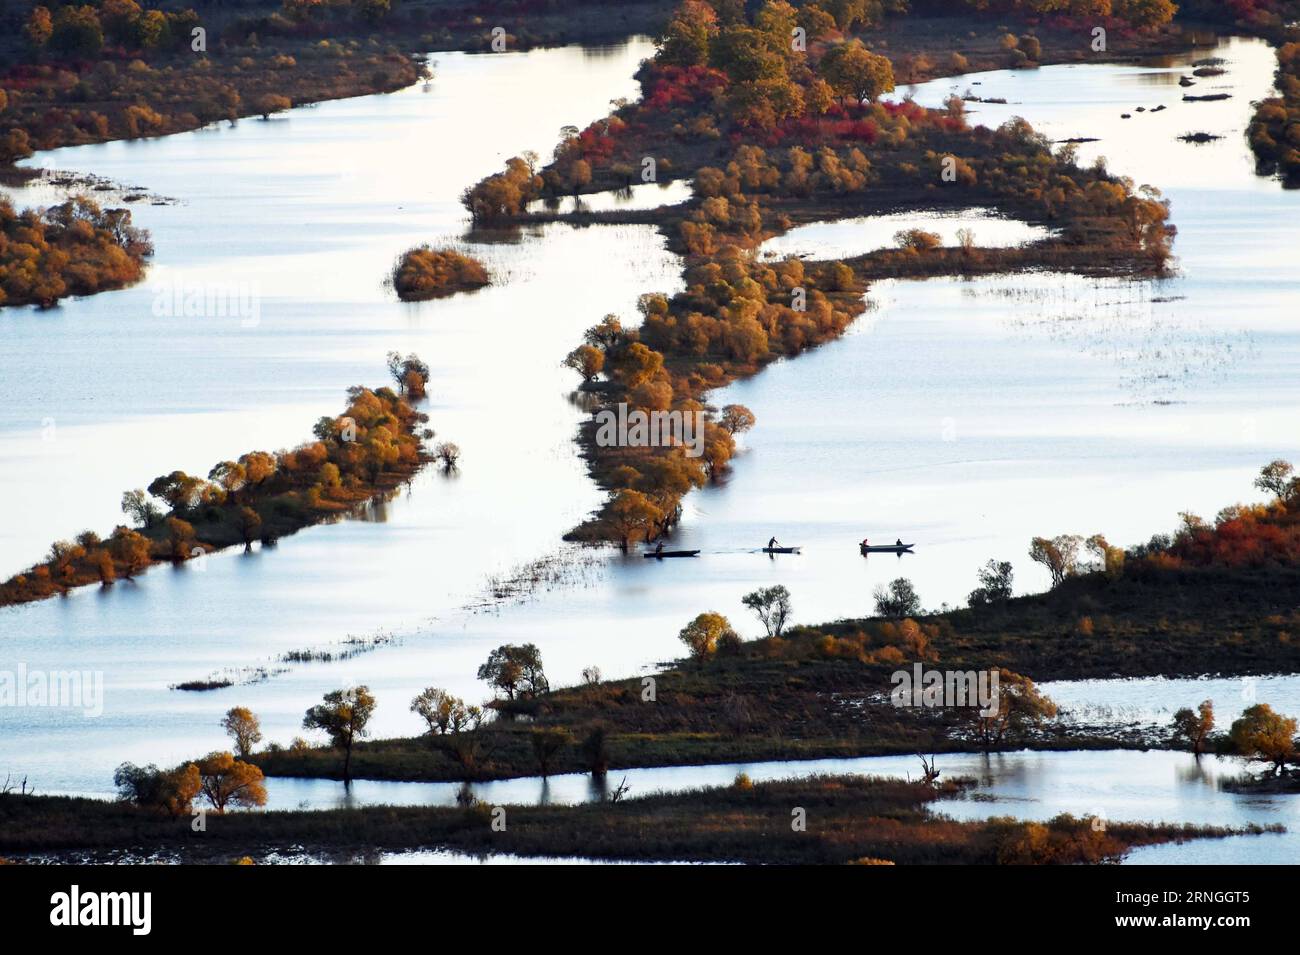 (160929) -- HULIN, 28 settembre 2016 -- foto scattata il 28 settembre 2016 mostra lo scenario della zona umida dell'isola di Zhenbao a Hulin, nella provincia di Heilongjiang nella Cina nordorientale. La zona umida di 29 275 ettari è stata designata come zona umida di importanza internazionale dalla Convenzione di Ramsar nel 2011 per la sua importanza vitale come zona umida unica per la diversità biologica. (Ry) CHINA-HEILONGJIANG-ZHENBAO ISLAND-LANDSCAPE (CN) WangxJianwei PUBLICATIONxNOTxINxCHN Hulin settembre 28 2016 la foto scattata IL 28 2016 settembre mostra il paesaggio della zona umida islandese di Zhenbao a Hulin provincia di Heilongjiang nel nord-est della Cina 2 Foto Stock